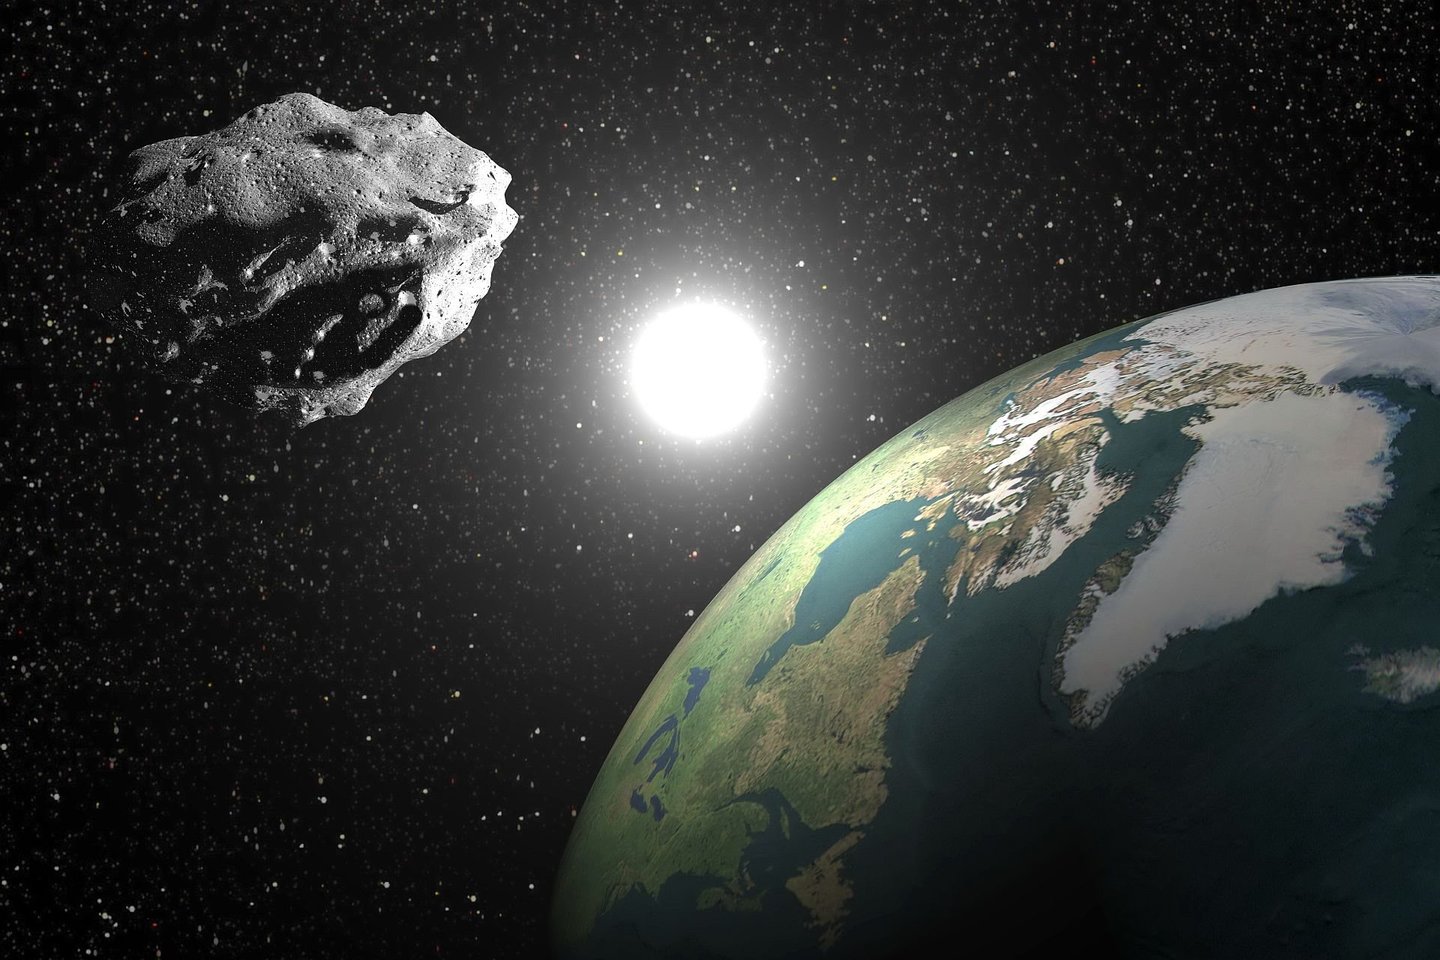  Teoriškai mikroskopinėse ertmėse asteroidų, taigi ir meteoritų, viduje skystis gali išlikti milijardus metų (asociatyvinė iliustr.)<br> 123rf nuotr.